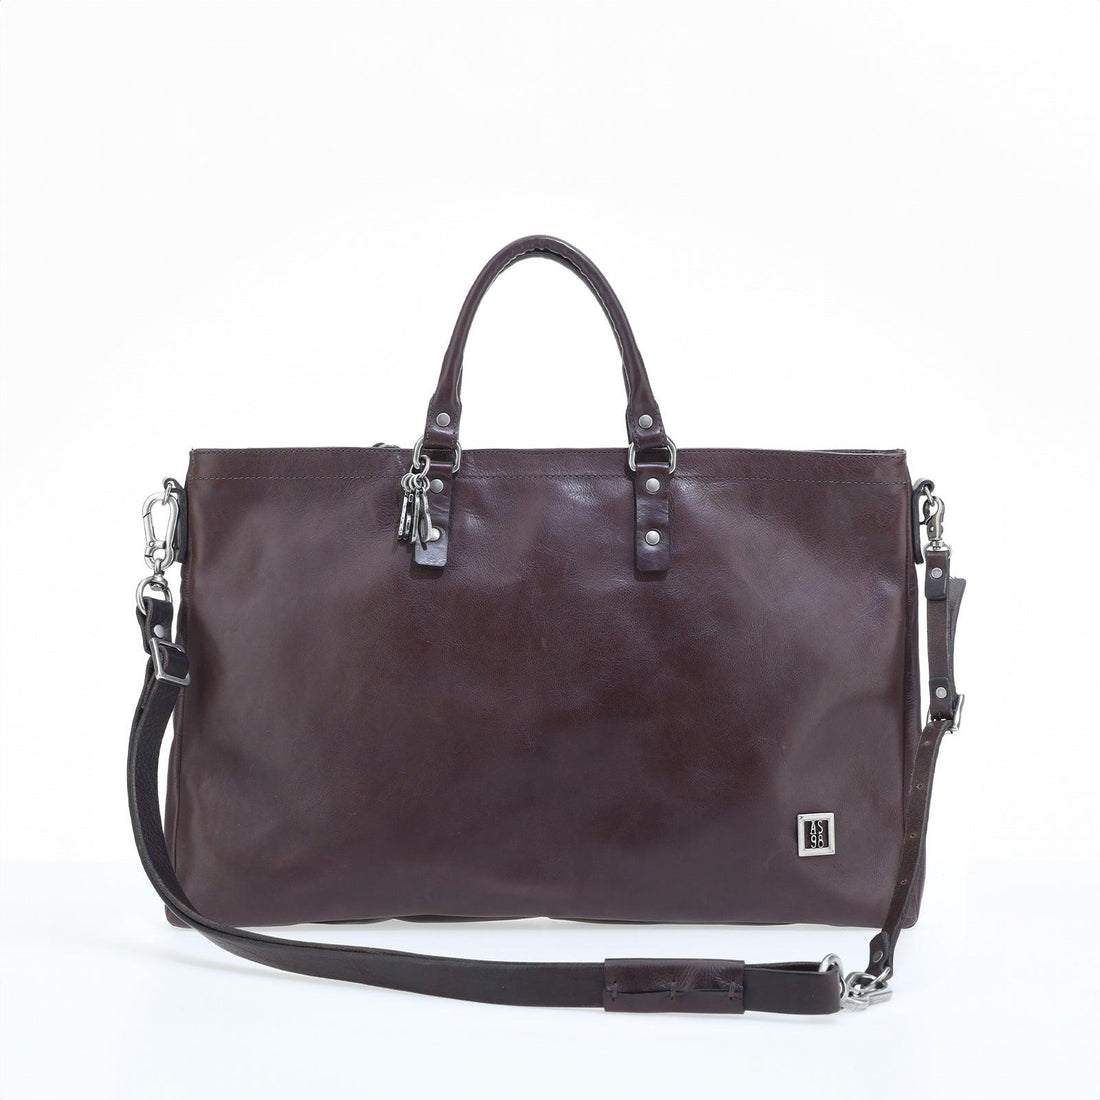 Bonny - A.S. 98 - Handbags